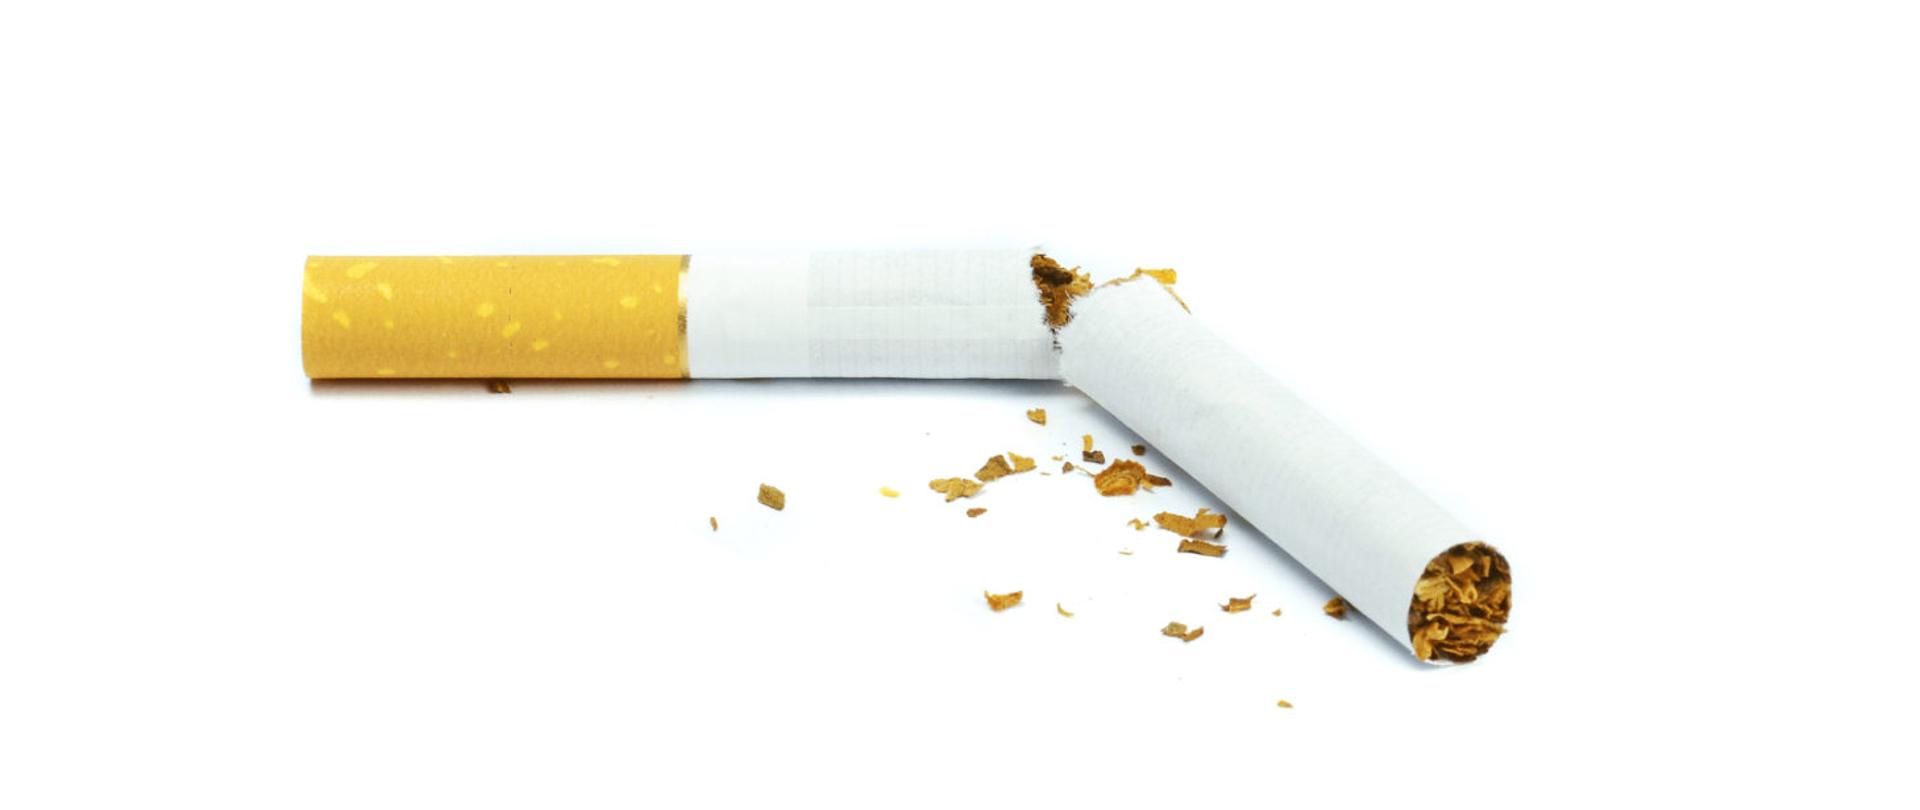 Światowy Dzień Rzucania Palenia